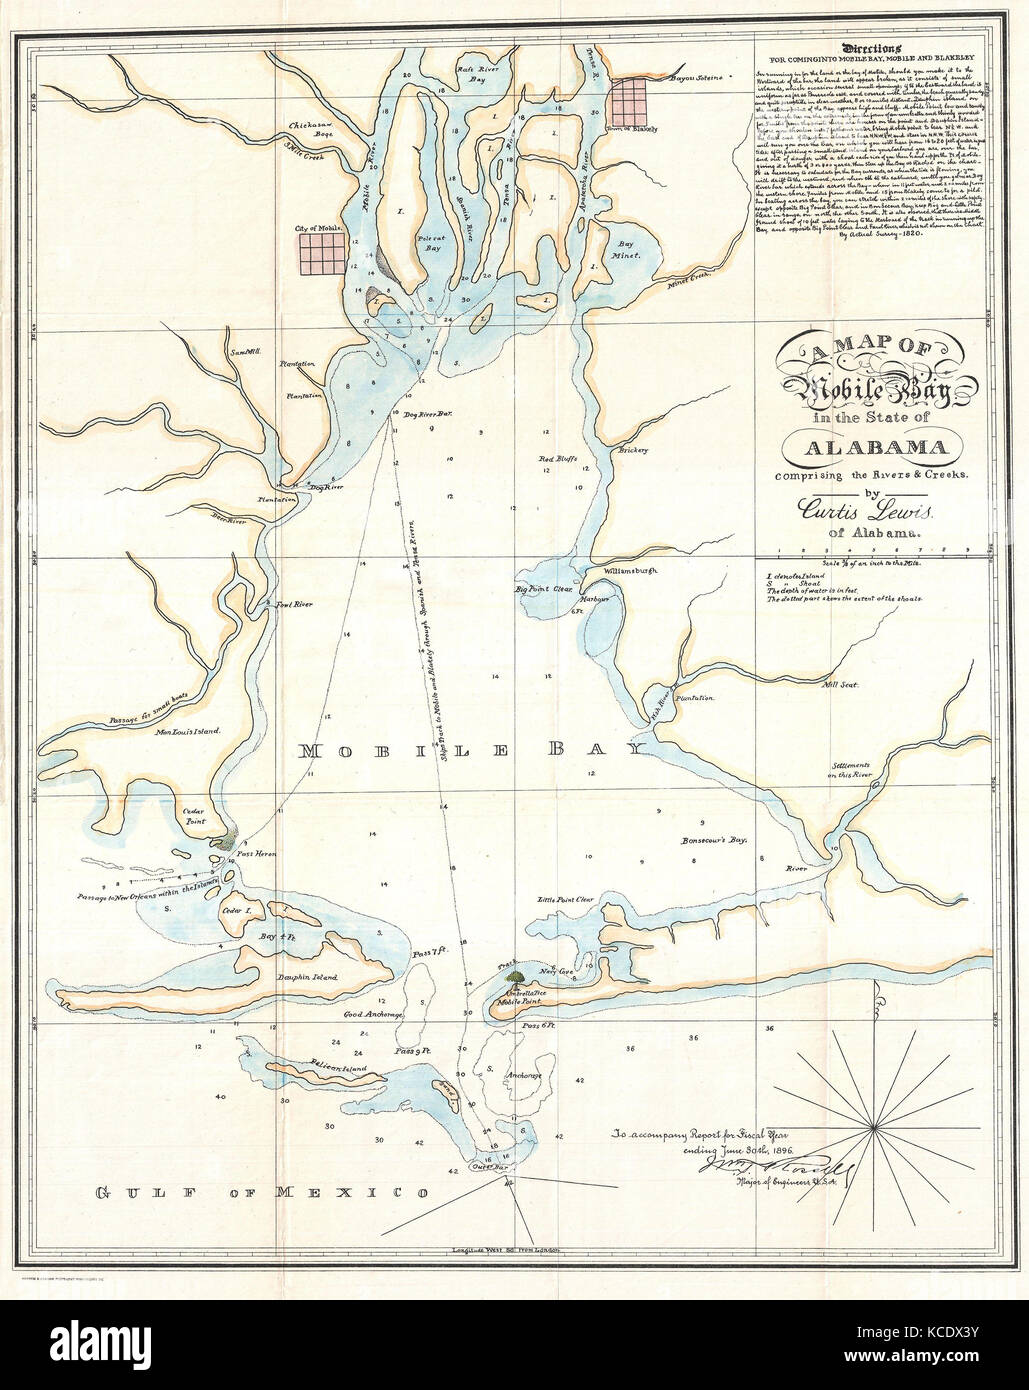 Mobile Bay Navigation Chart